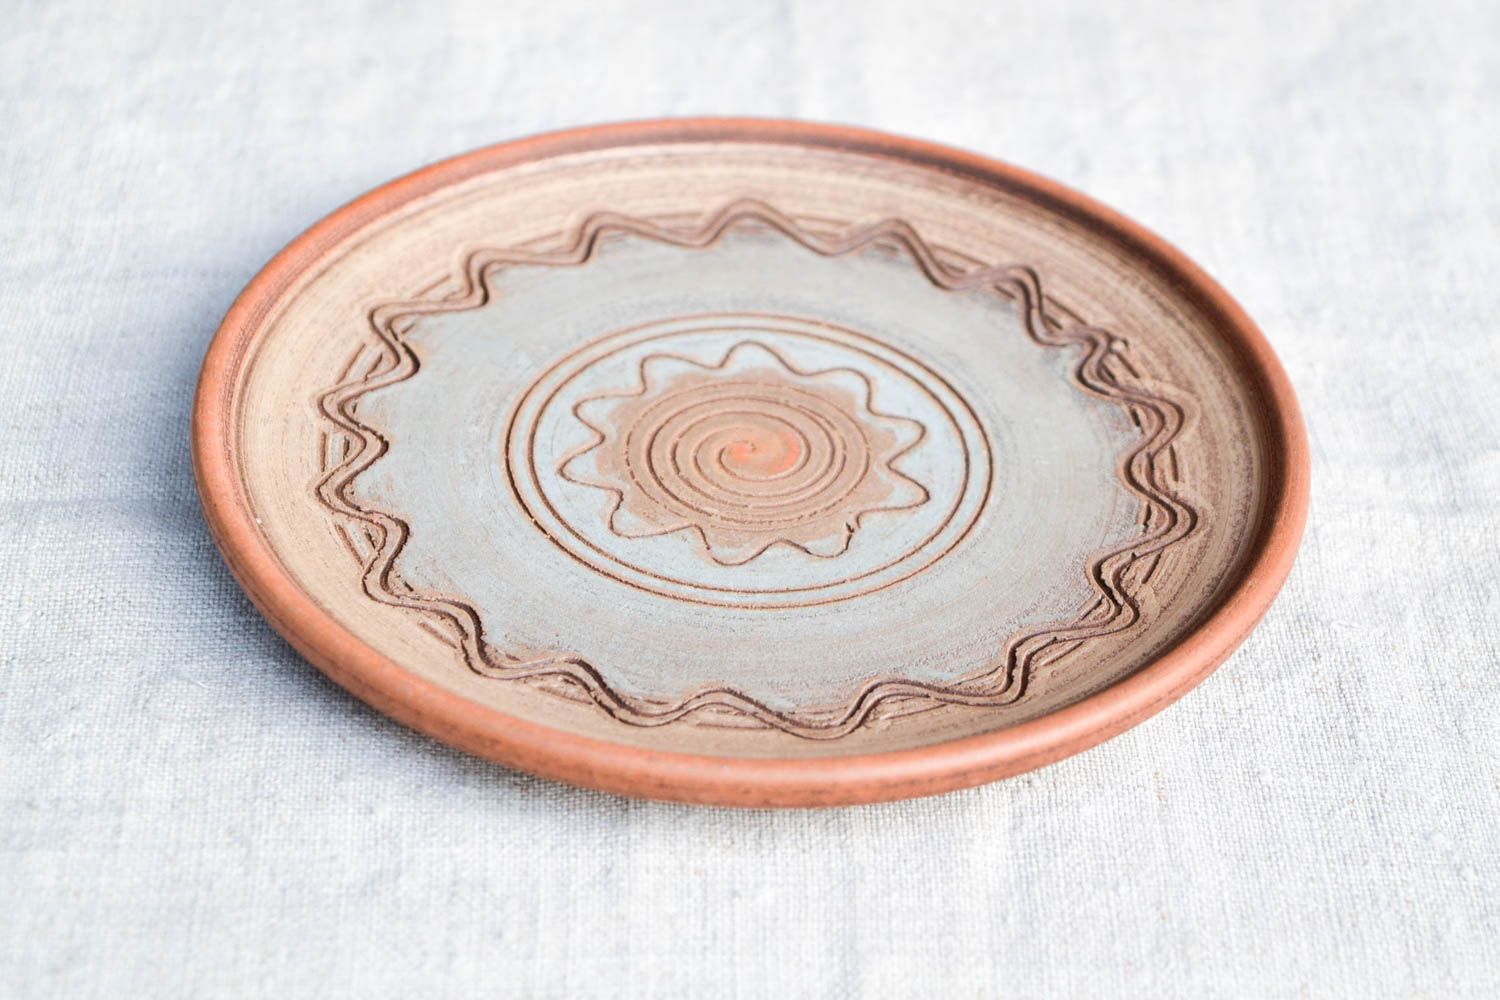 Homemade home decor ceramic plate ceramic dishes souvenir ideas handmade gifts photo 4